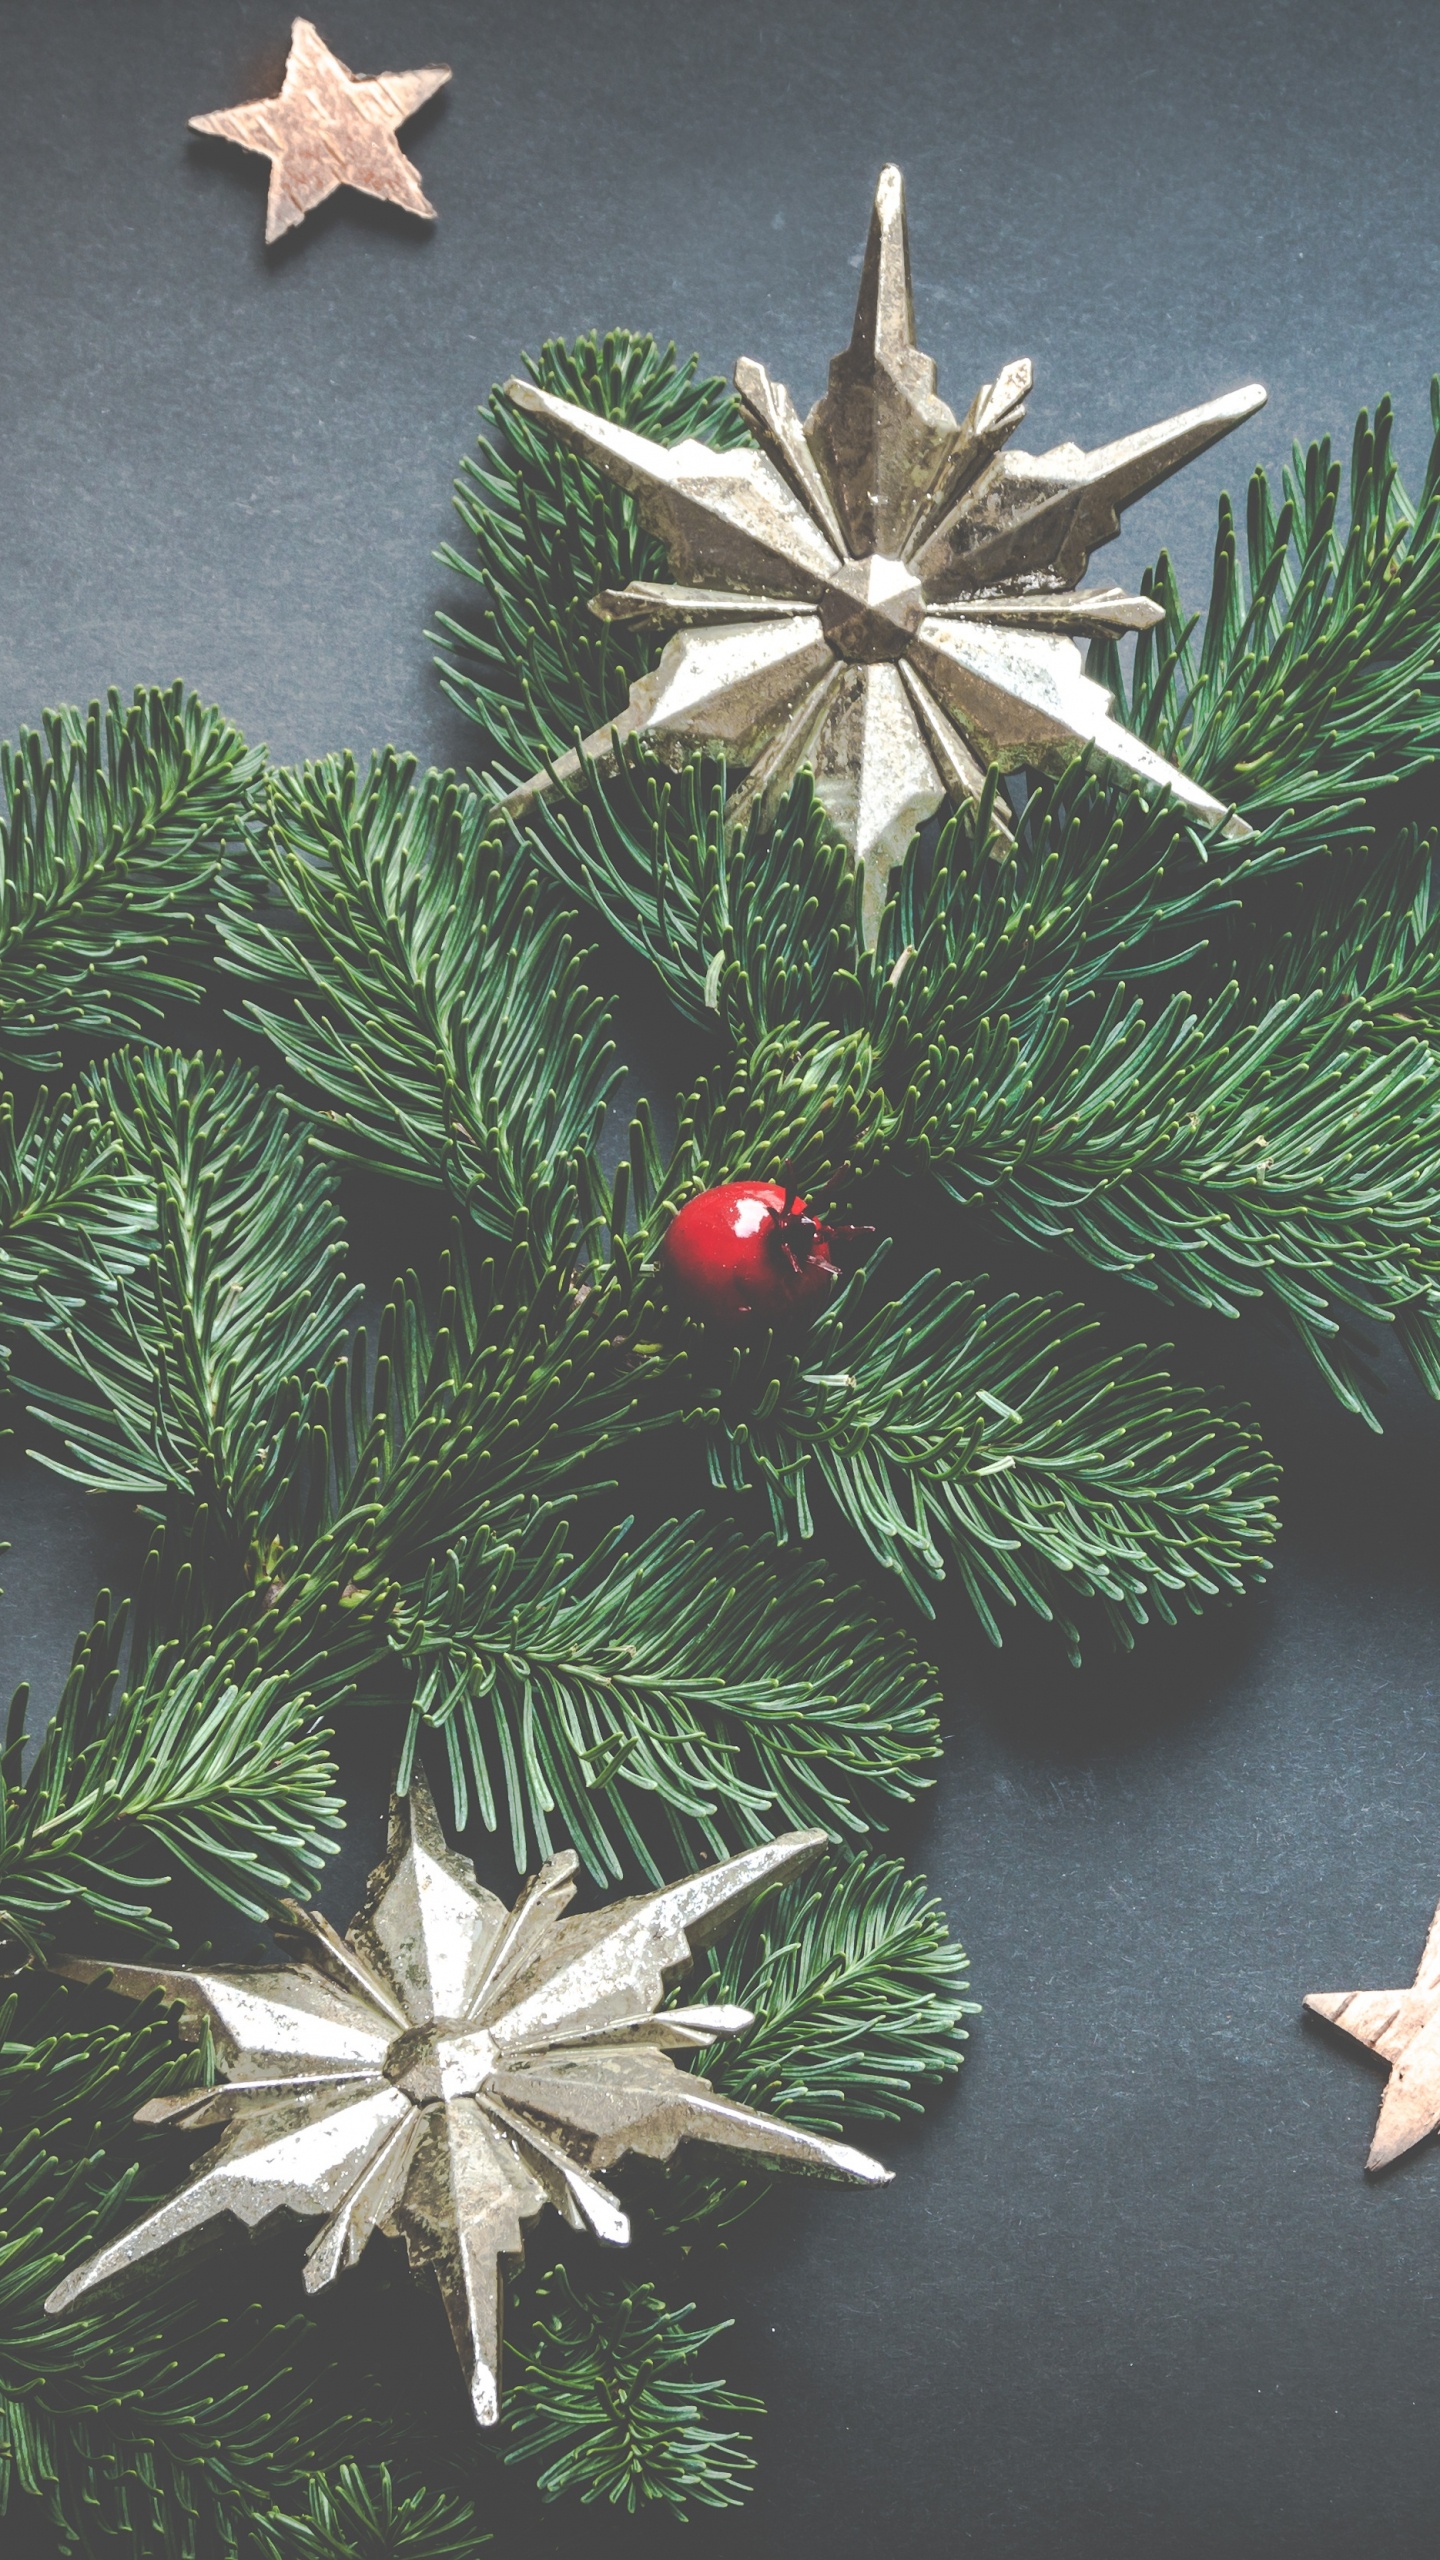 圣诞节那天, 圣诞节的装饰品, 俄勒冈州松树, 圣诞节, 节日装饰品 壁纸 1440x2560 允许